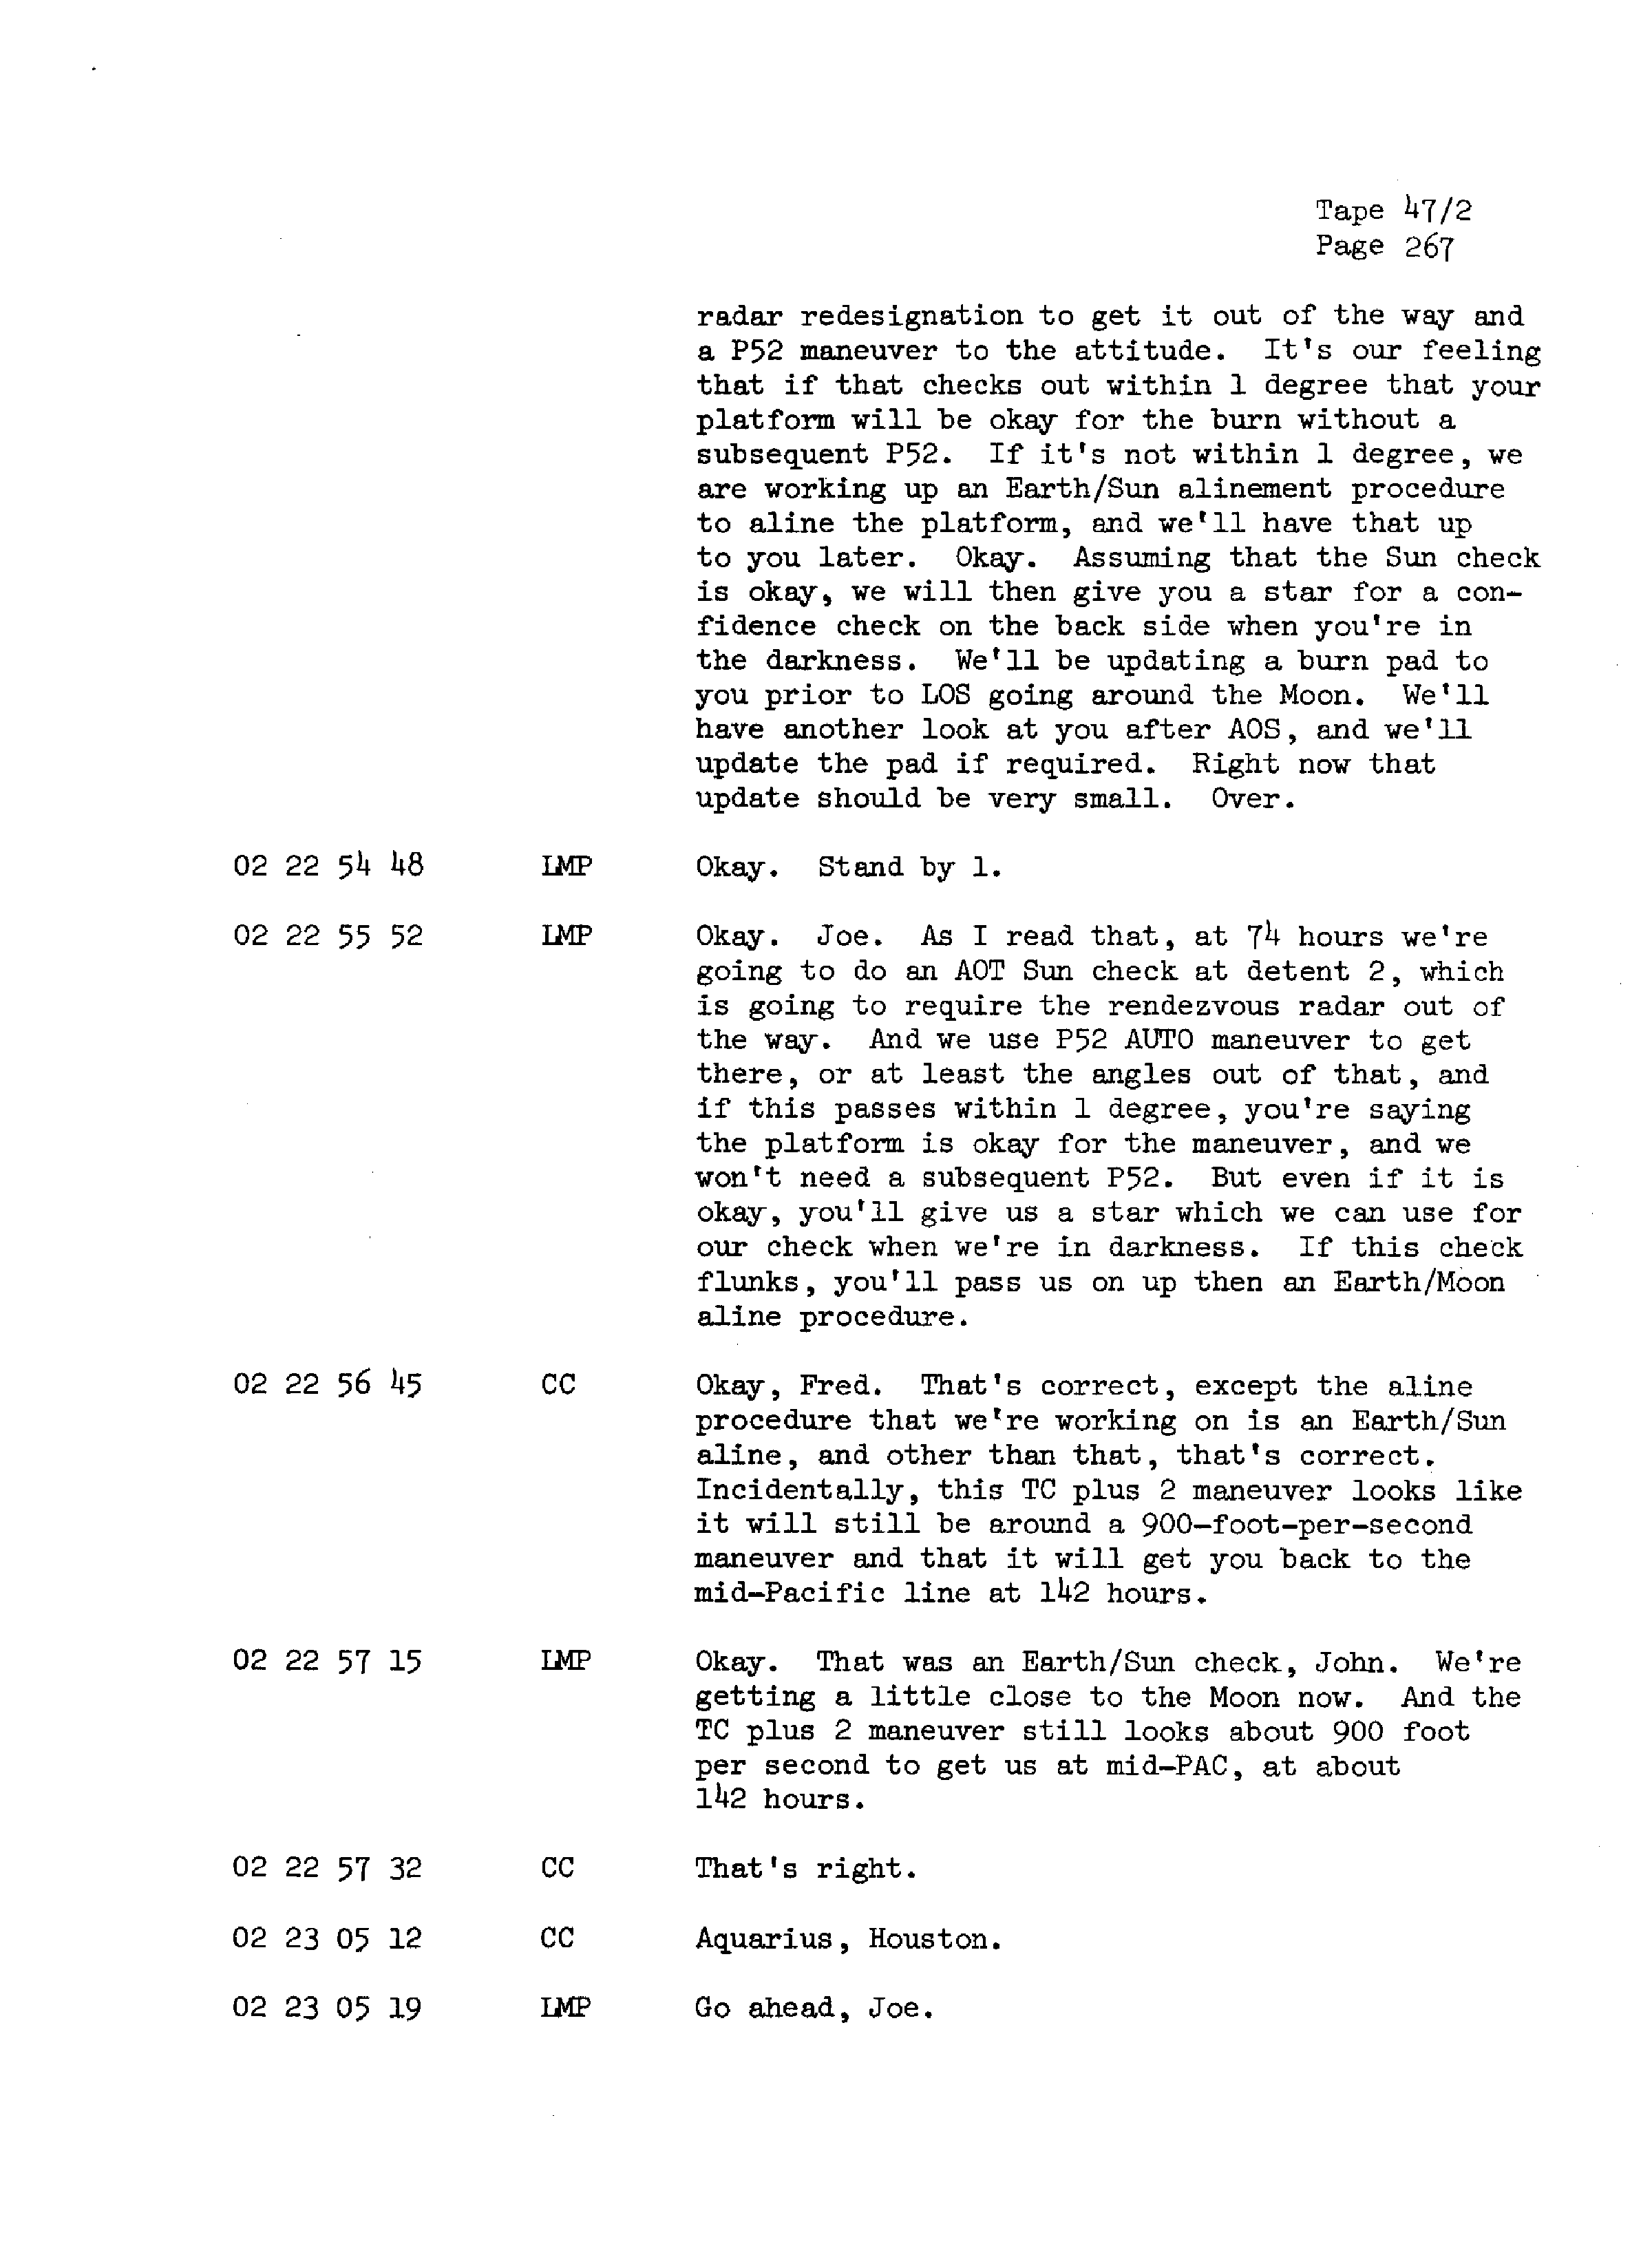 Page 274 of Apollo 13’s original transcript